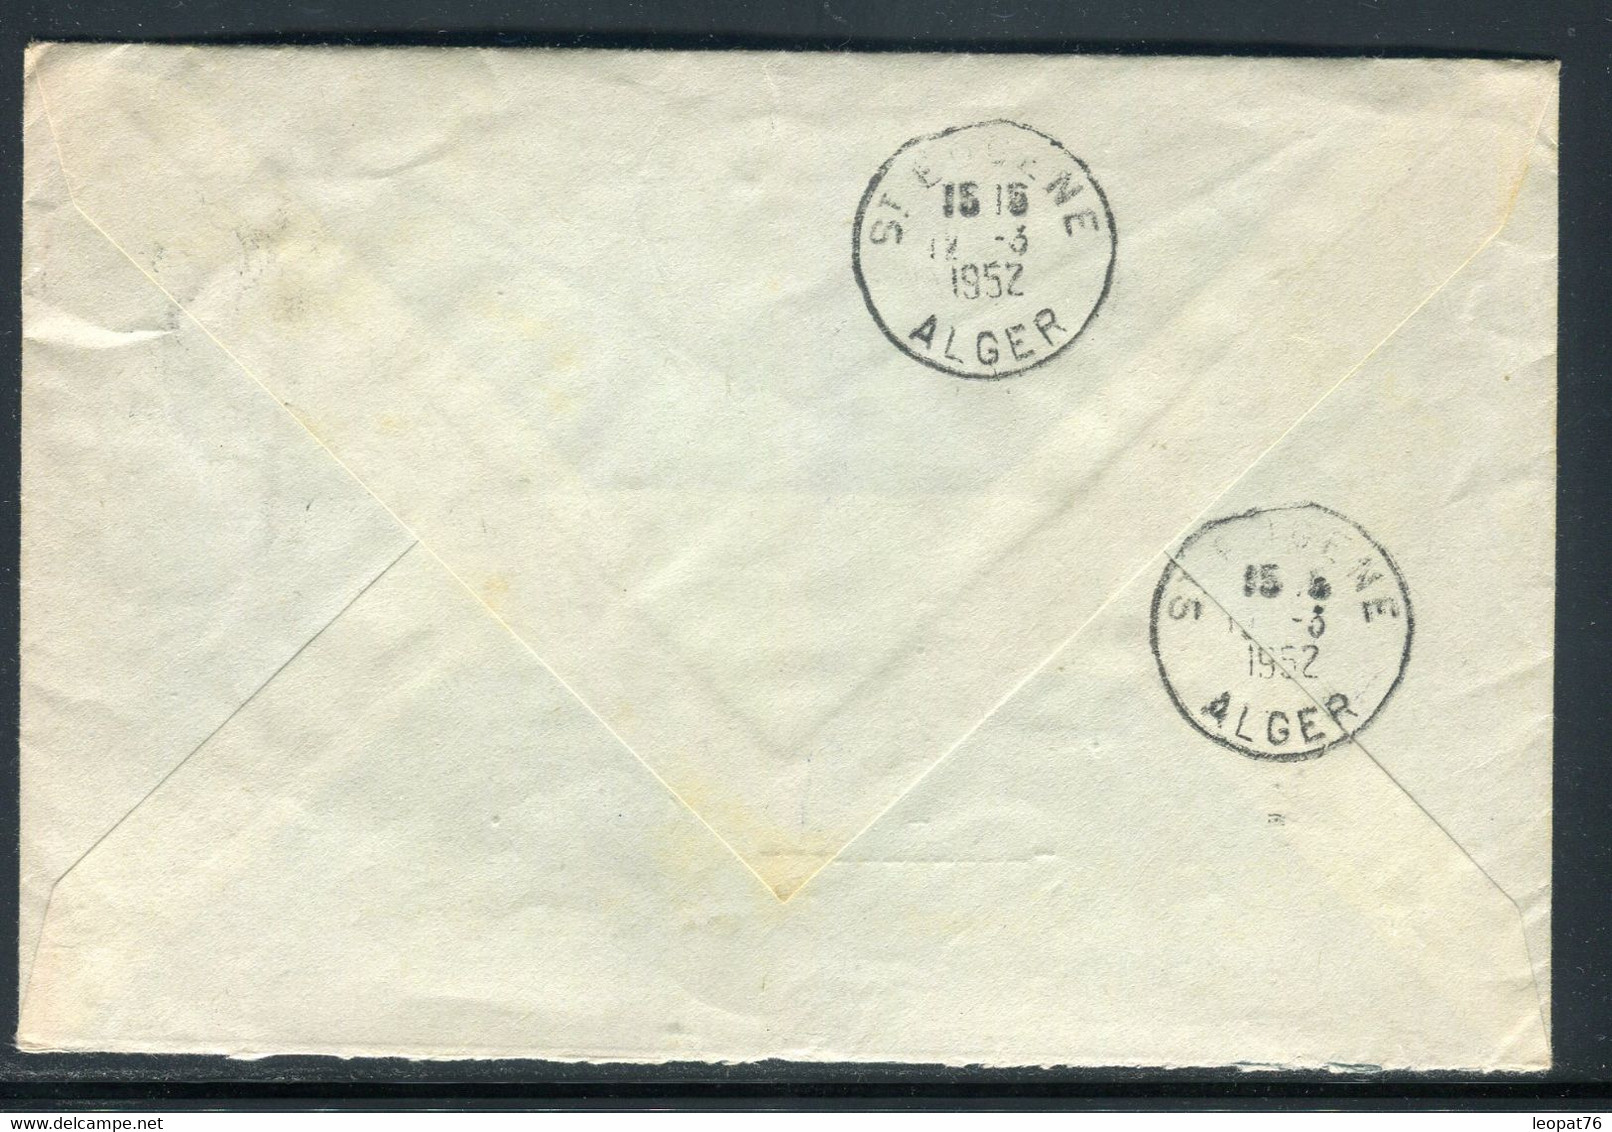 Algérie - Enveloppe En Recommandé De Sidi Bel Abbès En 1952 Pour La France - Ref S 122 - Covers & Documents